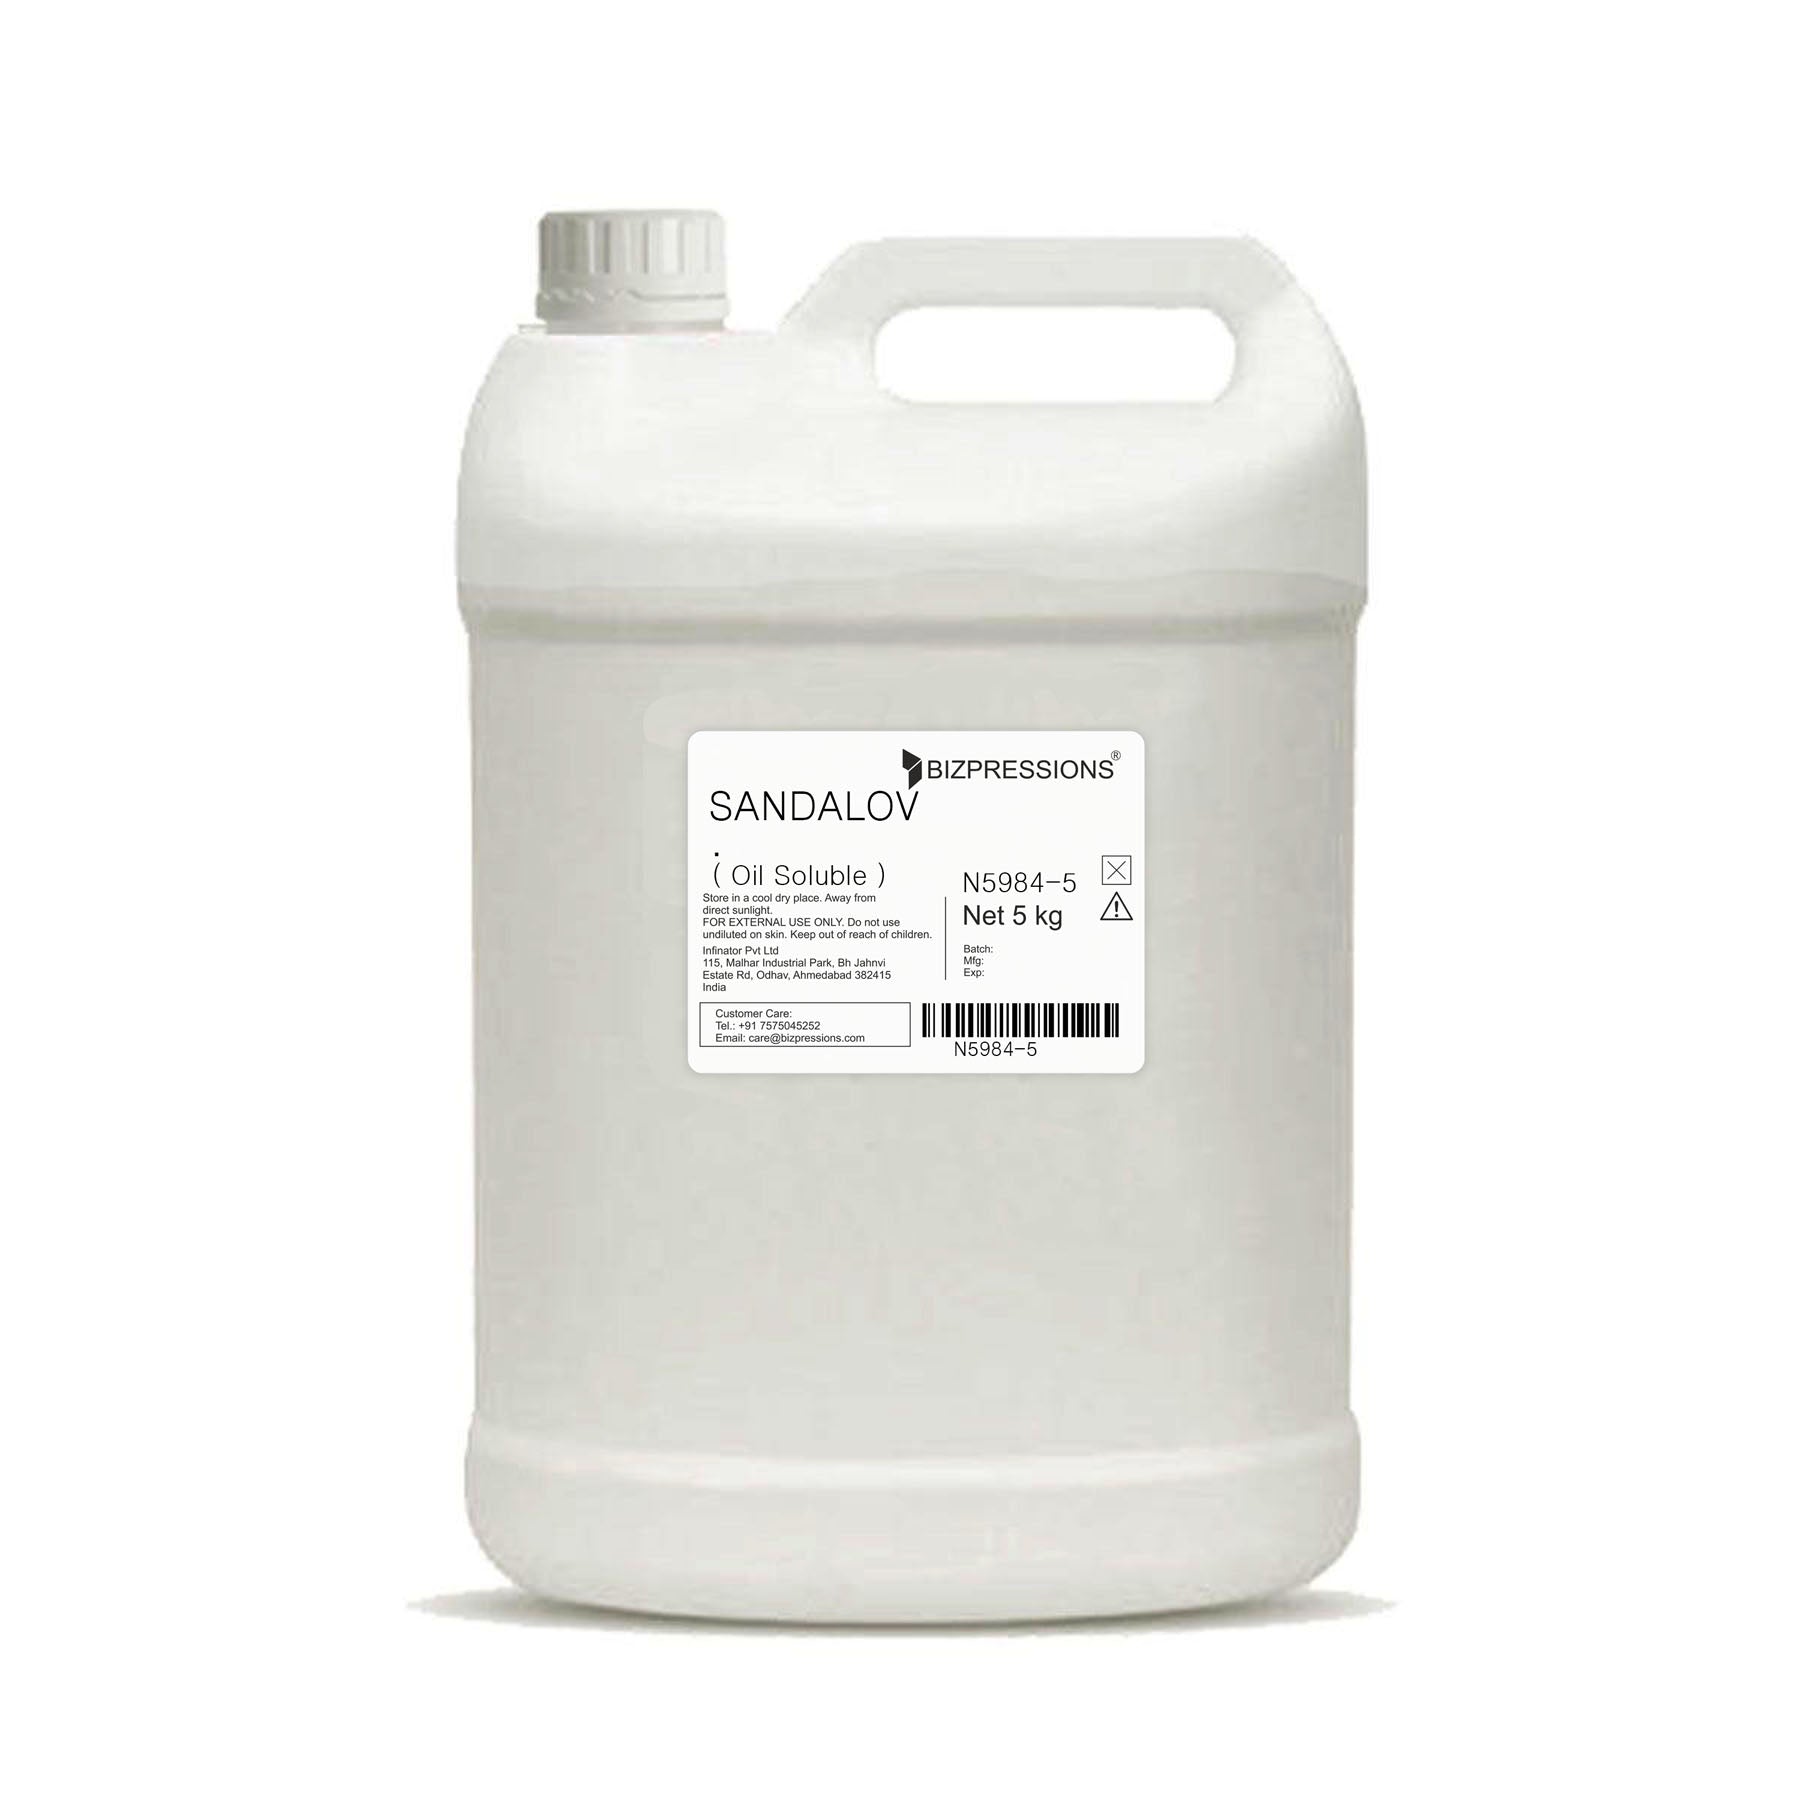 SANDALOV - Fragrance ( Oil Soluble ) - 5 kg